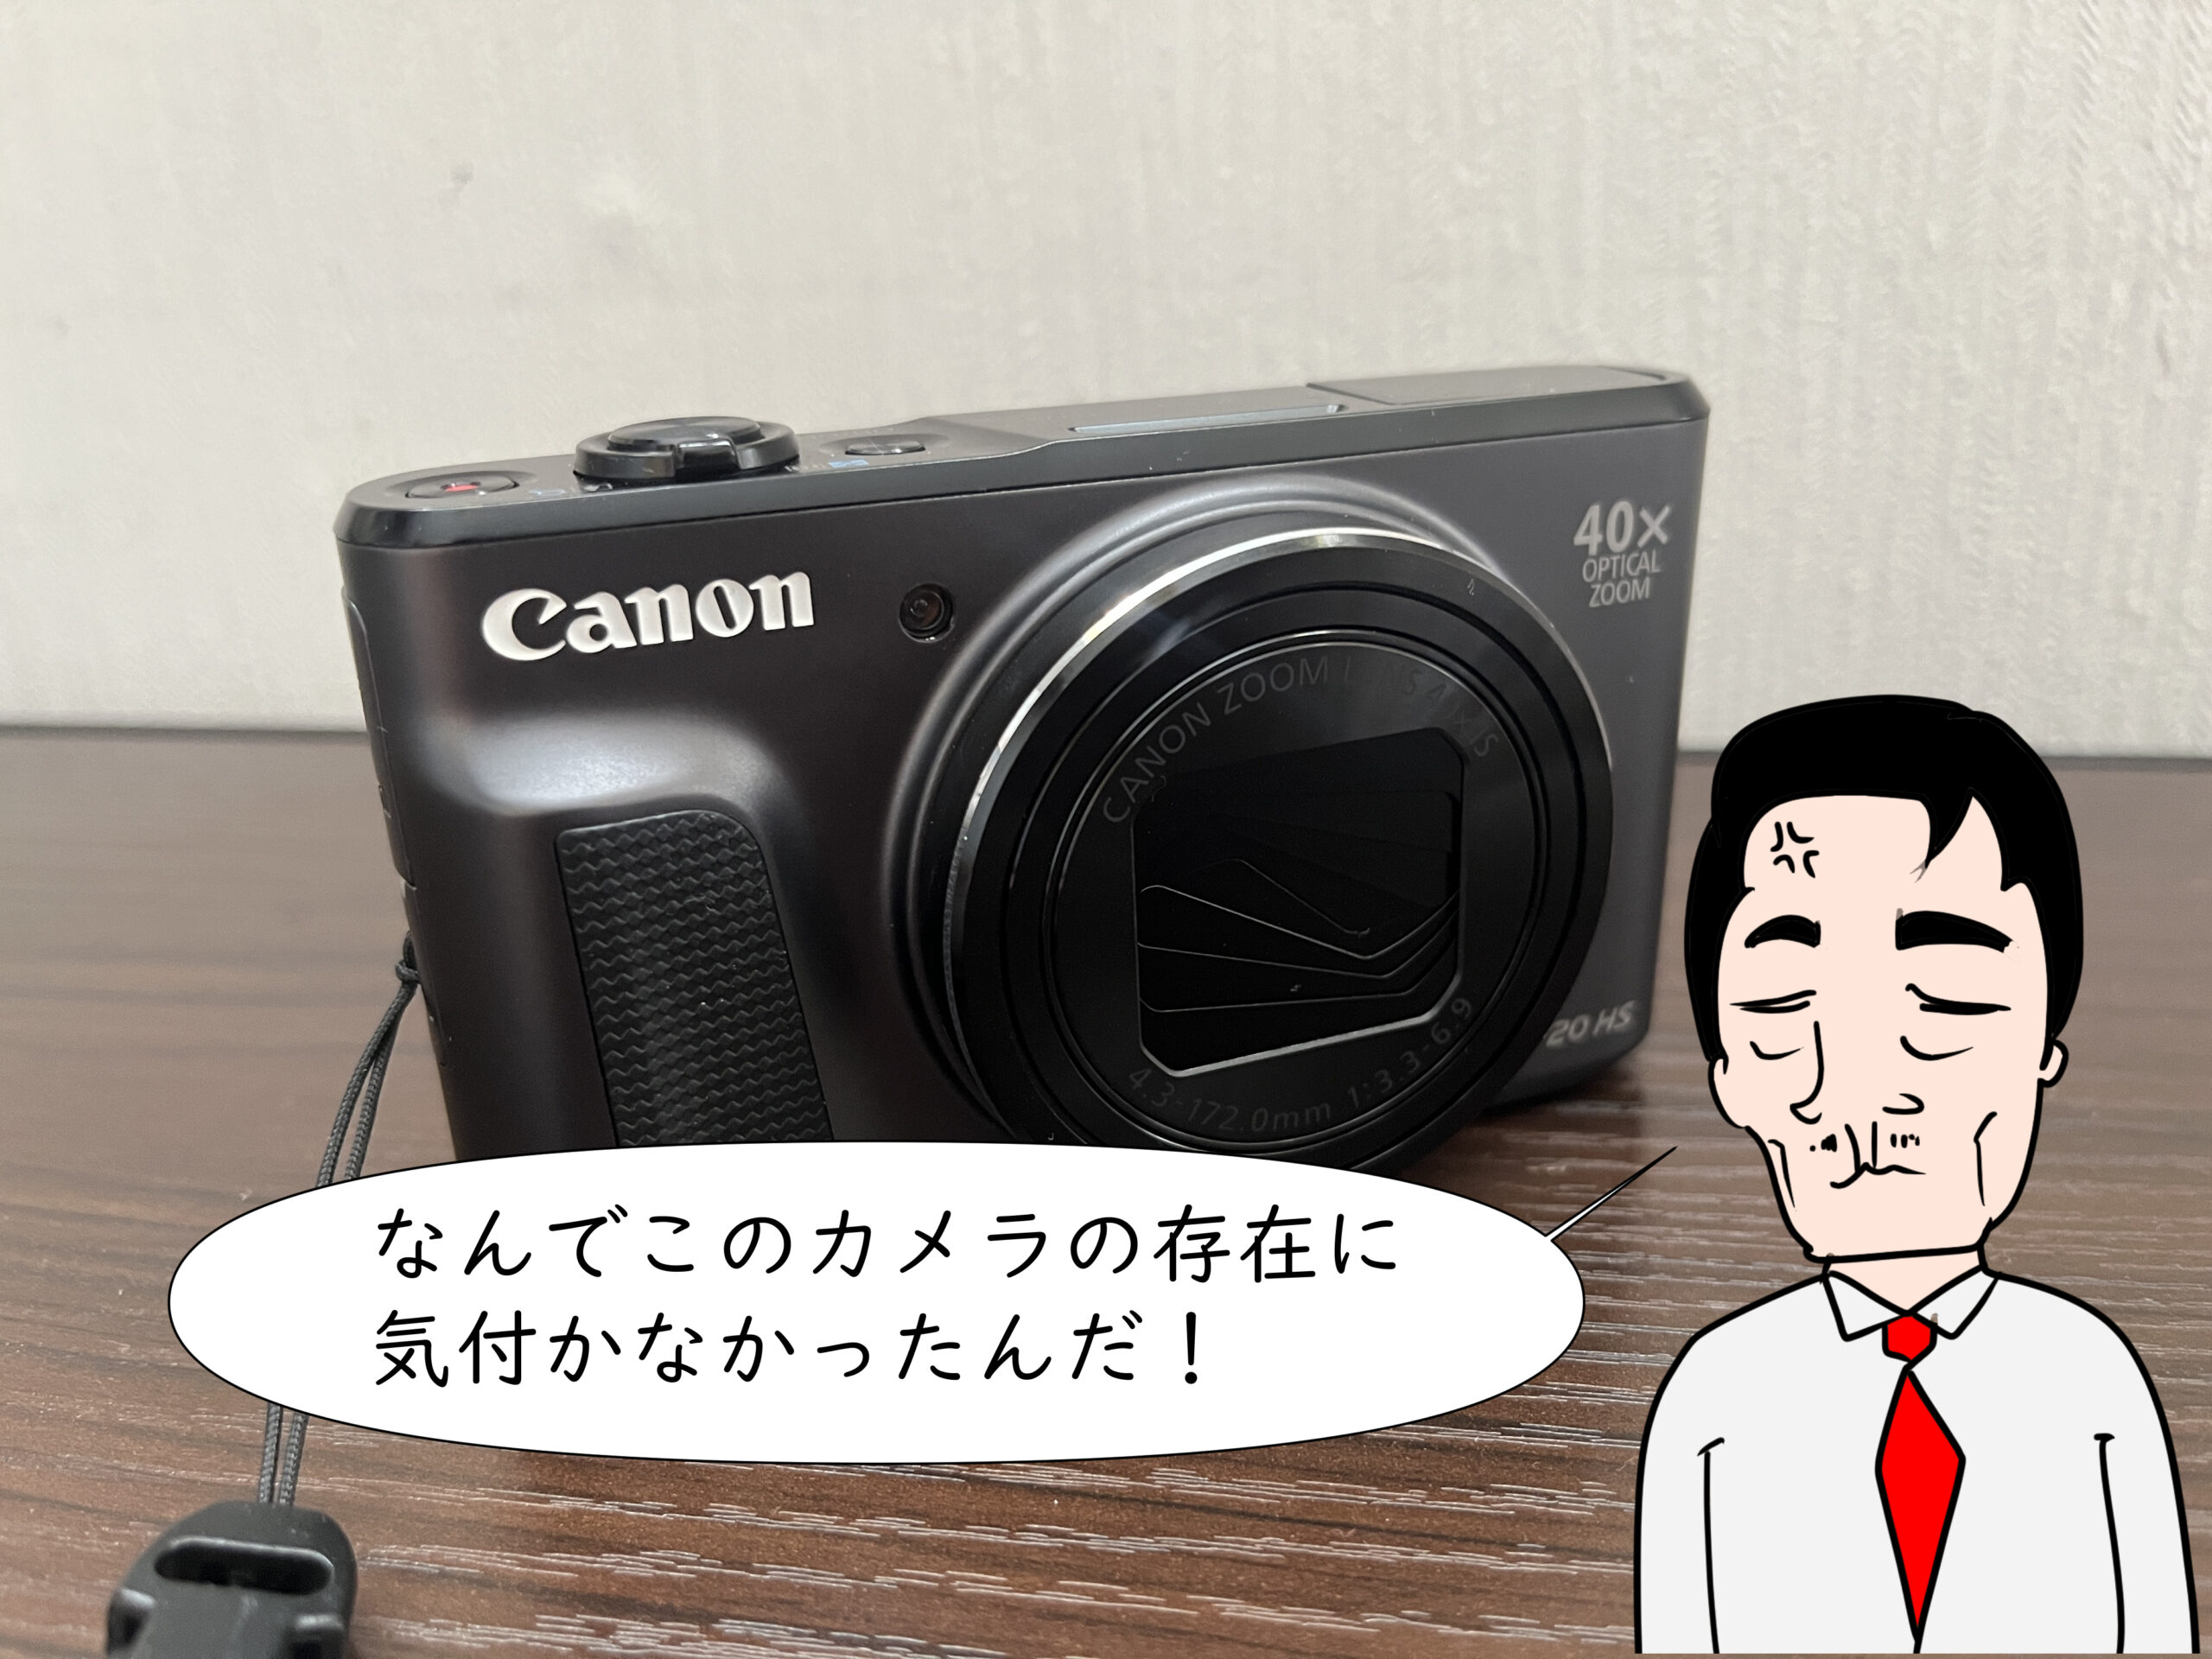 【難あり】Canon PowerShot SX720 HS デジカメ コンデジ専用電池